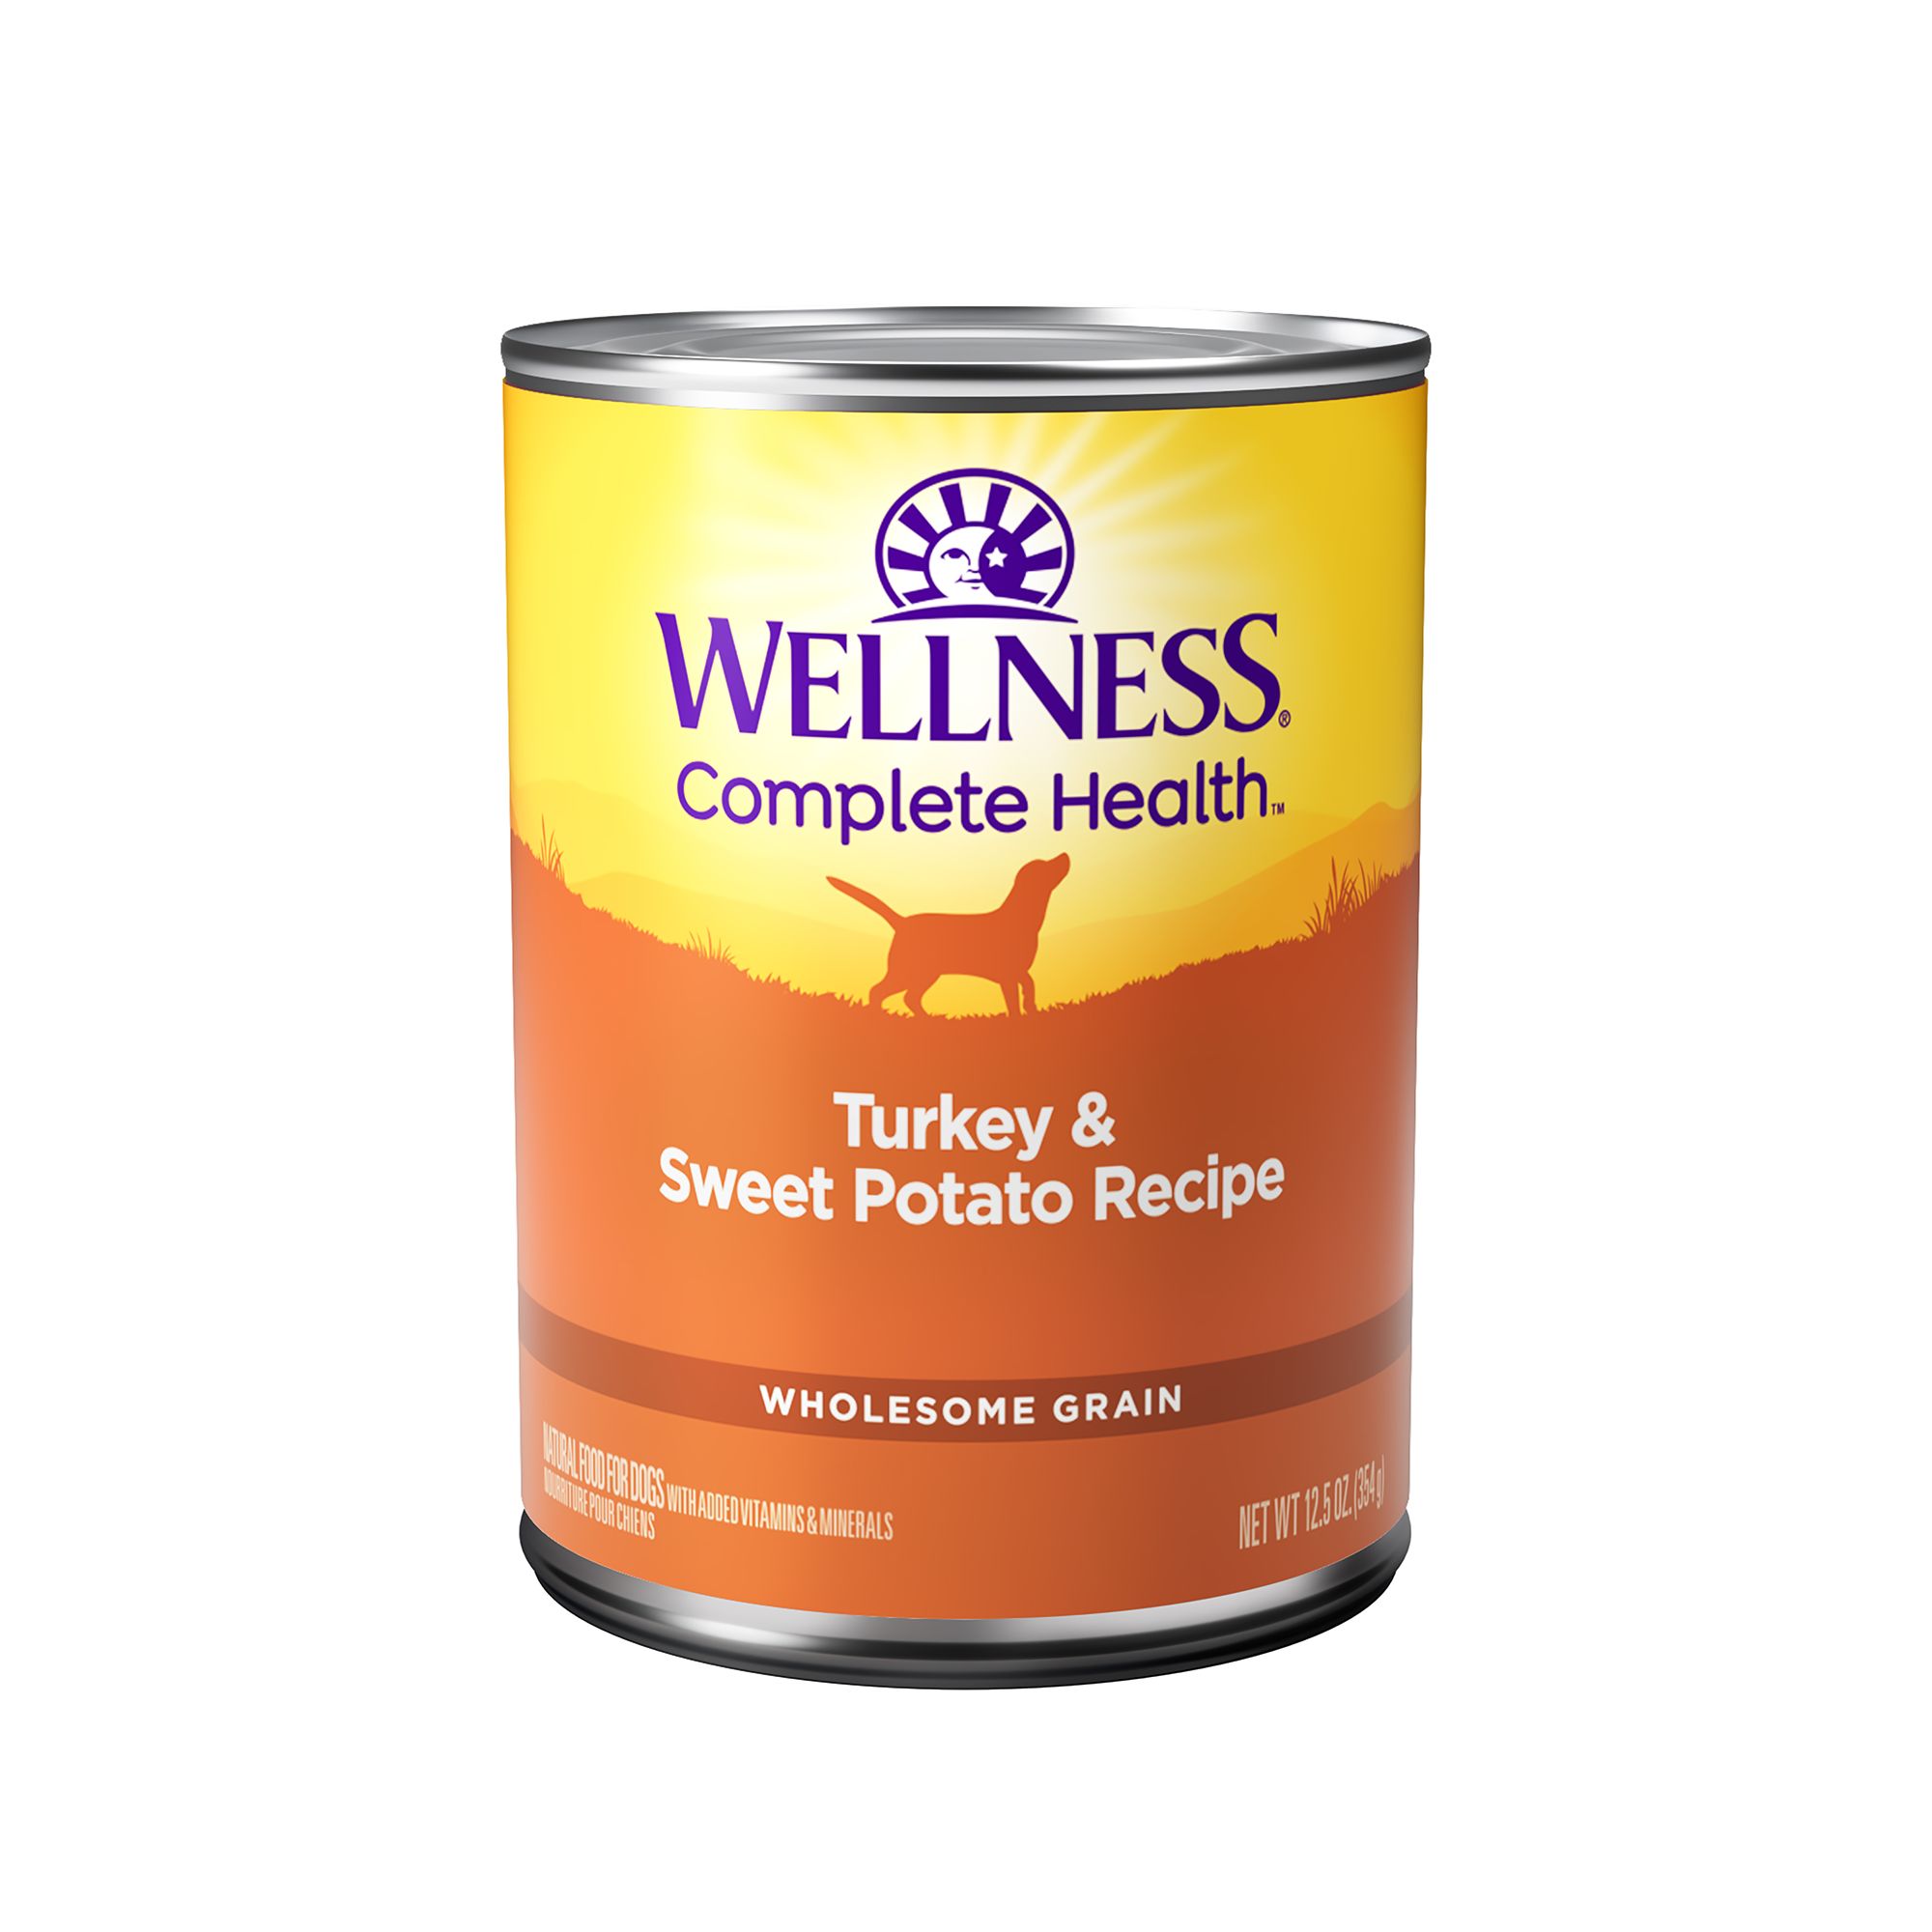 wellness simple dog food petsmart